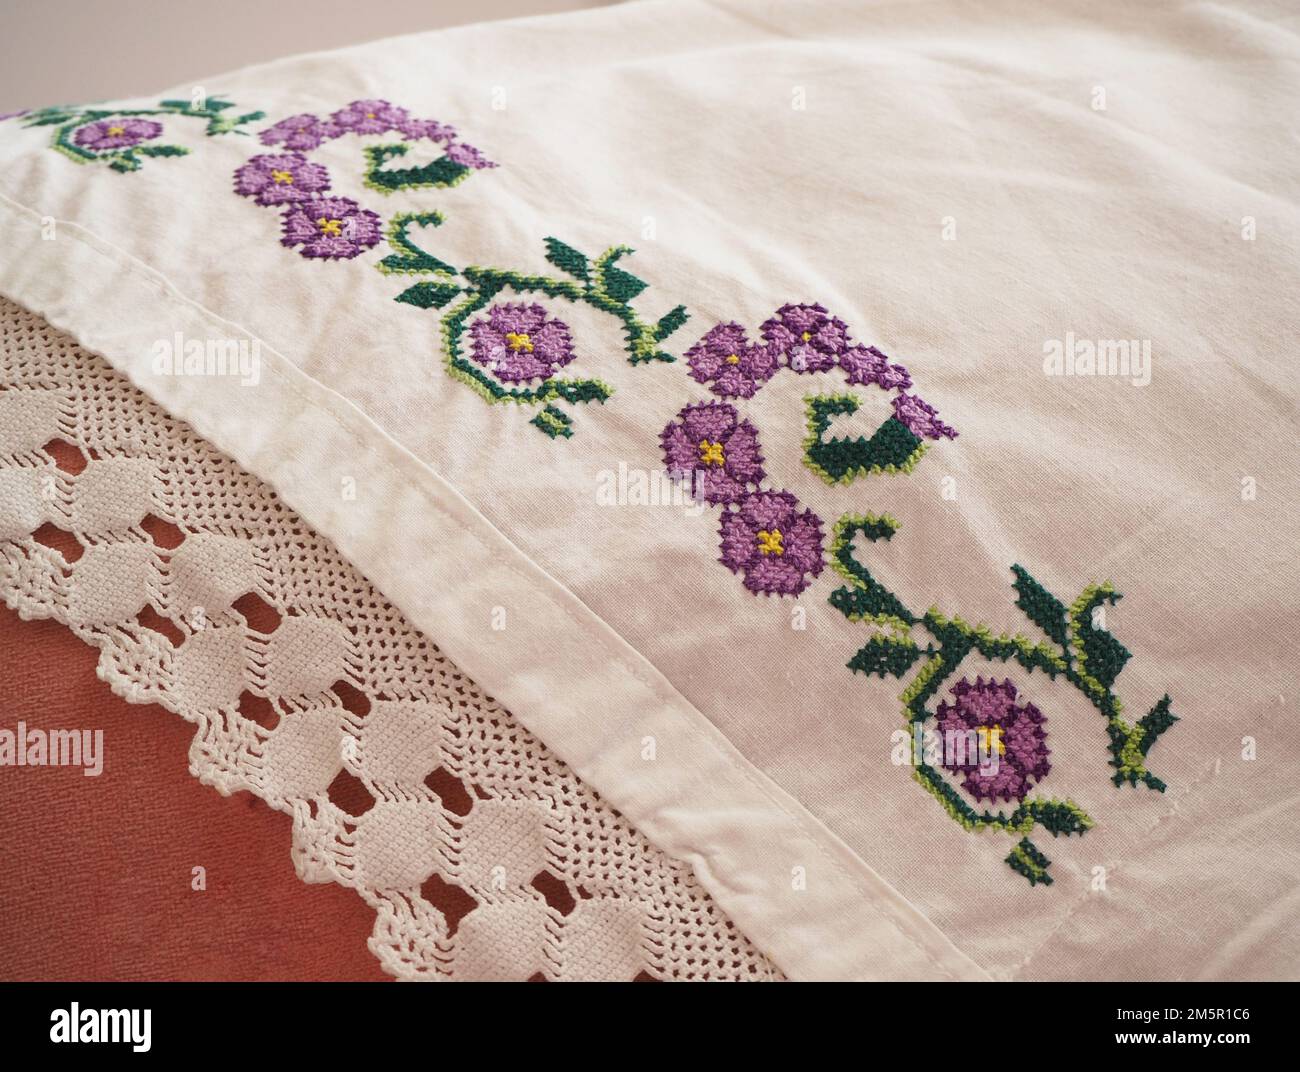 Embriodery floreale. Tradizionale anatolia artigianale sulla federa bianca. Motivo floreale ricamato su tessuto. Foto Stock